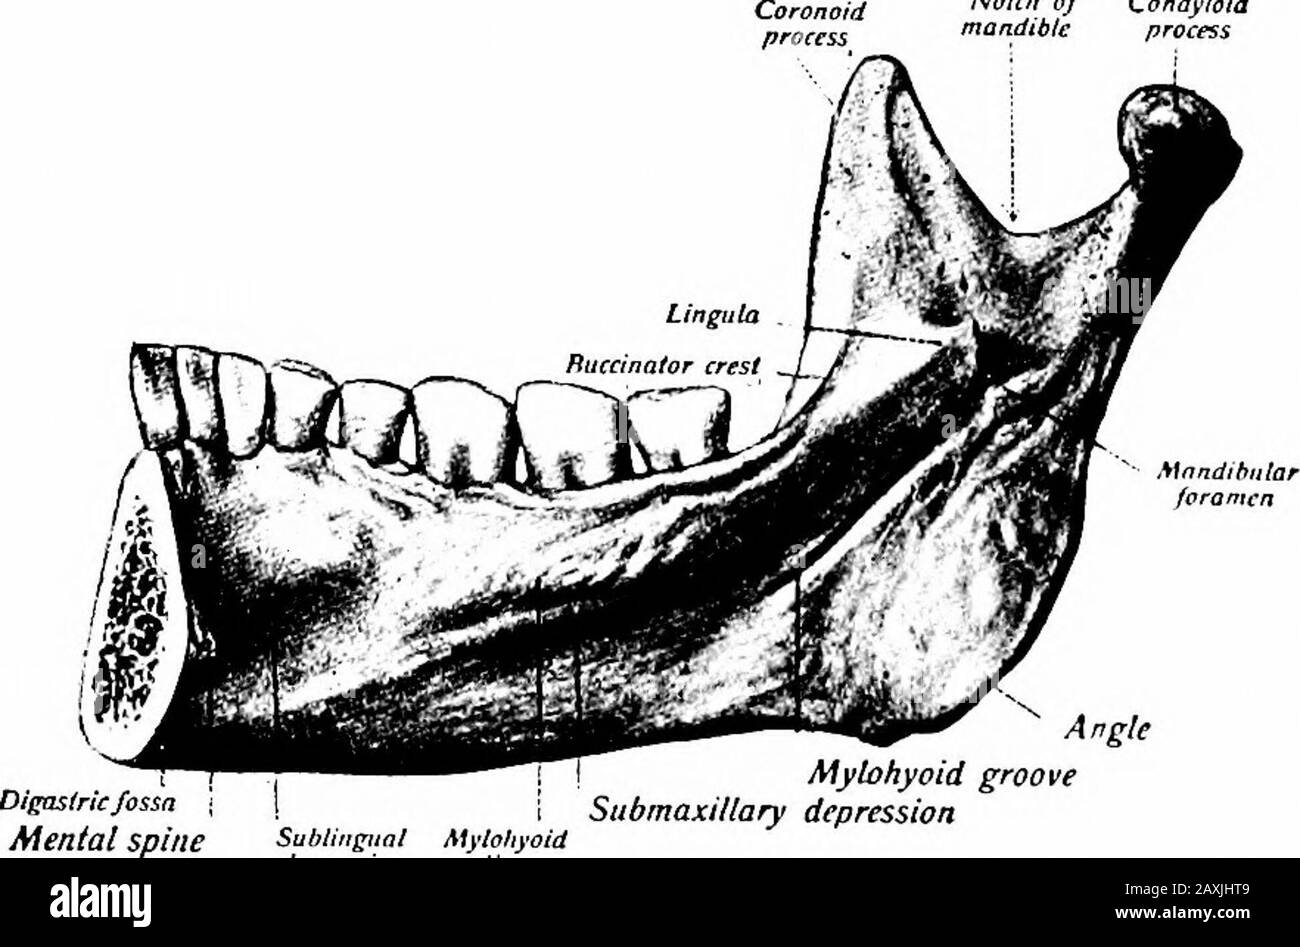 Un manuel d'anatomie . e étagère d'os surplombant l'ouverture est thelingula mandibidoR. Une rainure oblique (sidcus mylohyoideus) s'étenddsvers le bas des foramen Lodges l'artère mylohyoïde et le nerf.L'angle (angulus mandibum) représente la jonction de la base andrami. La marge antérieure est libre et continue avec l'obliqueline. La marge postérieure est épaisse, lisse et couverte par le pare- LE CRÂNE DANS SA TOTALITÉ 67 tid glande. La marge inférieure représente la fusion du ramus et du corps. La marge supérieure est mince et présente les processus coronoïdes andcondyloïdes avec un mandib intervenant Banque D'Images